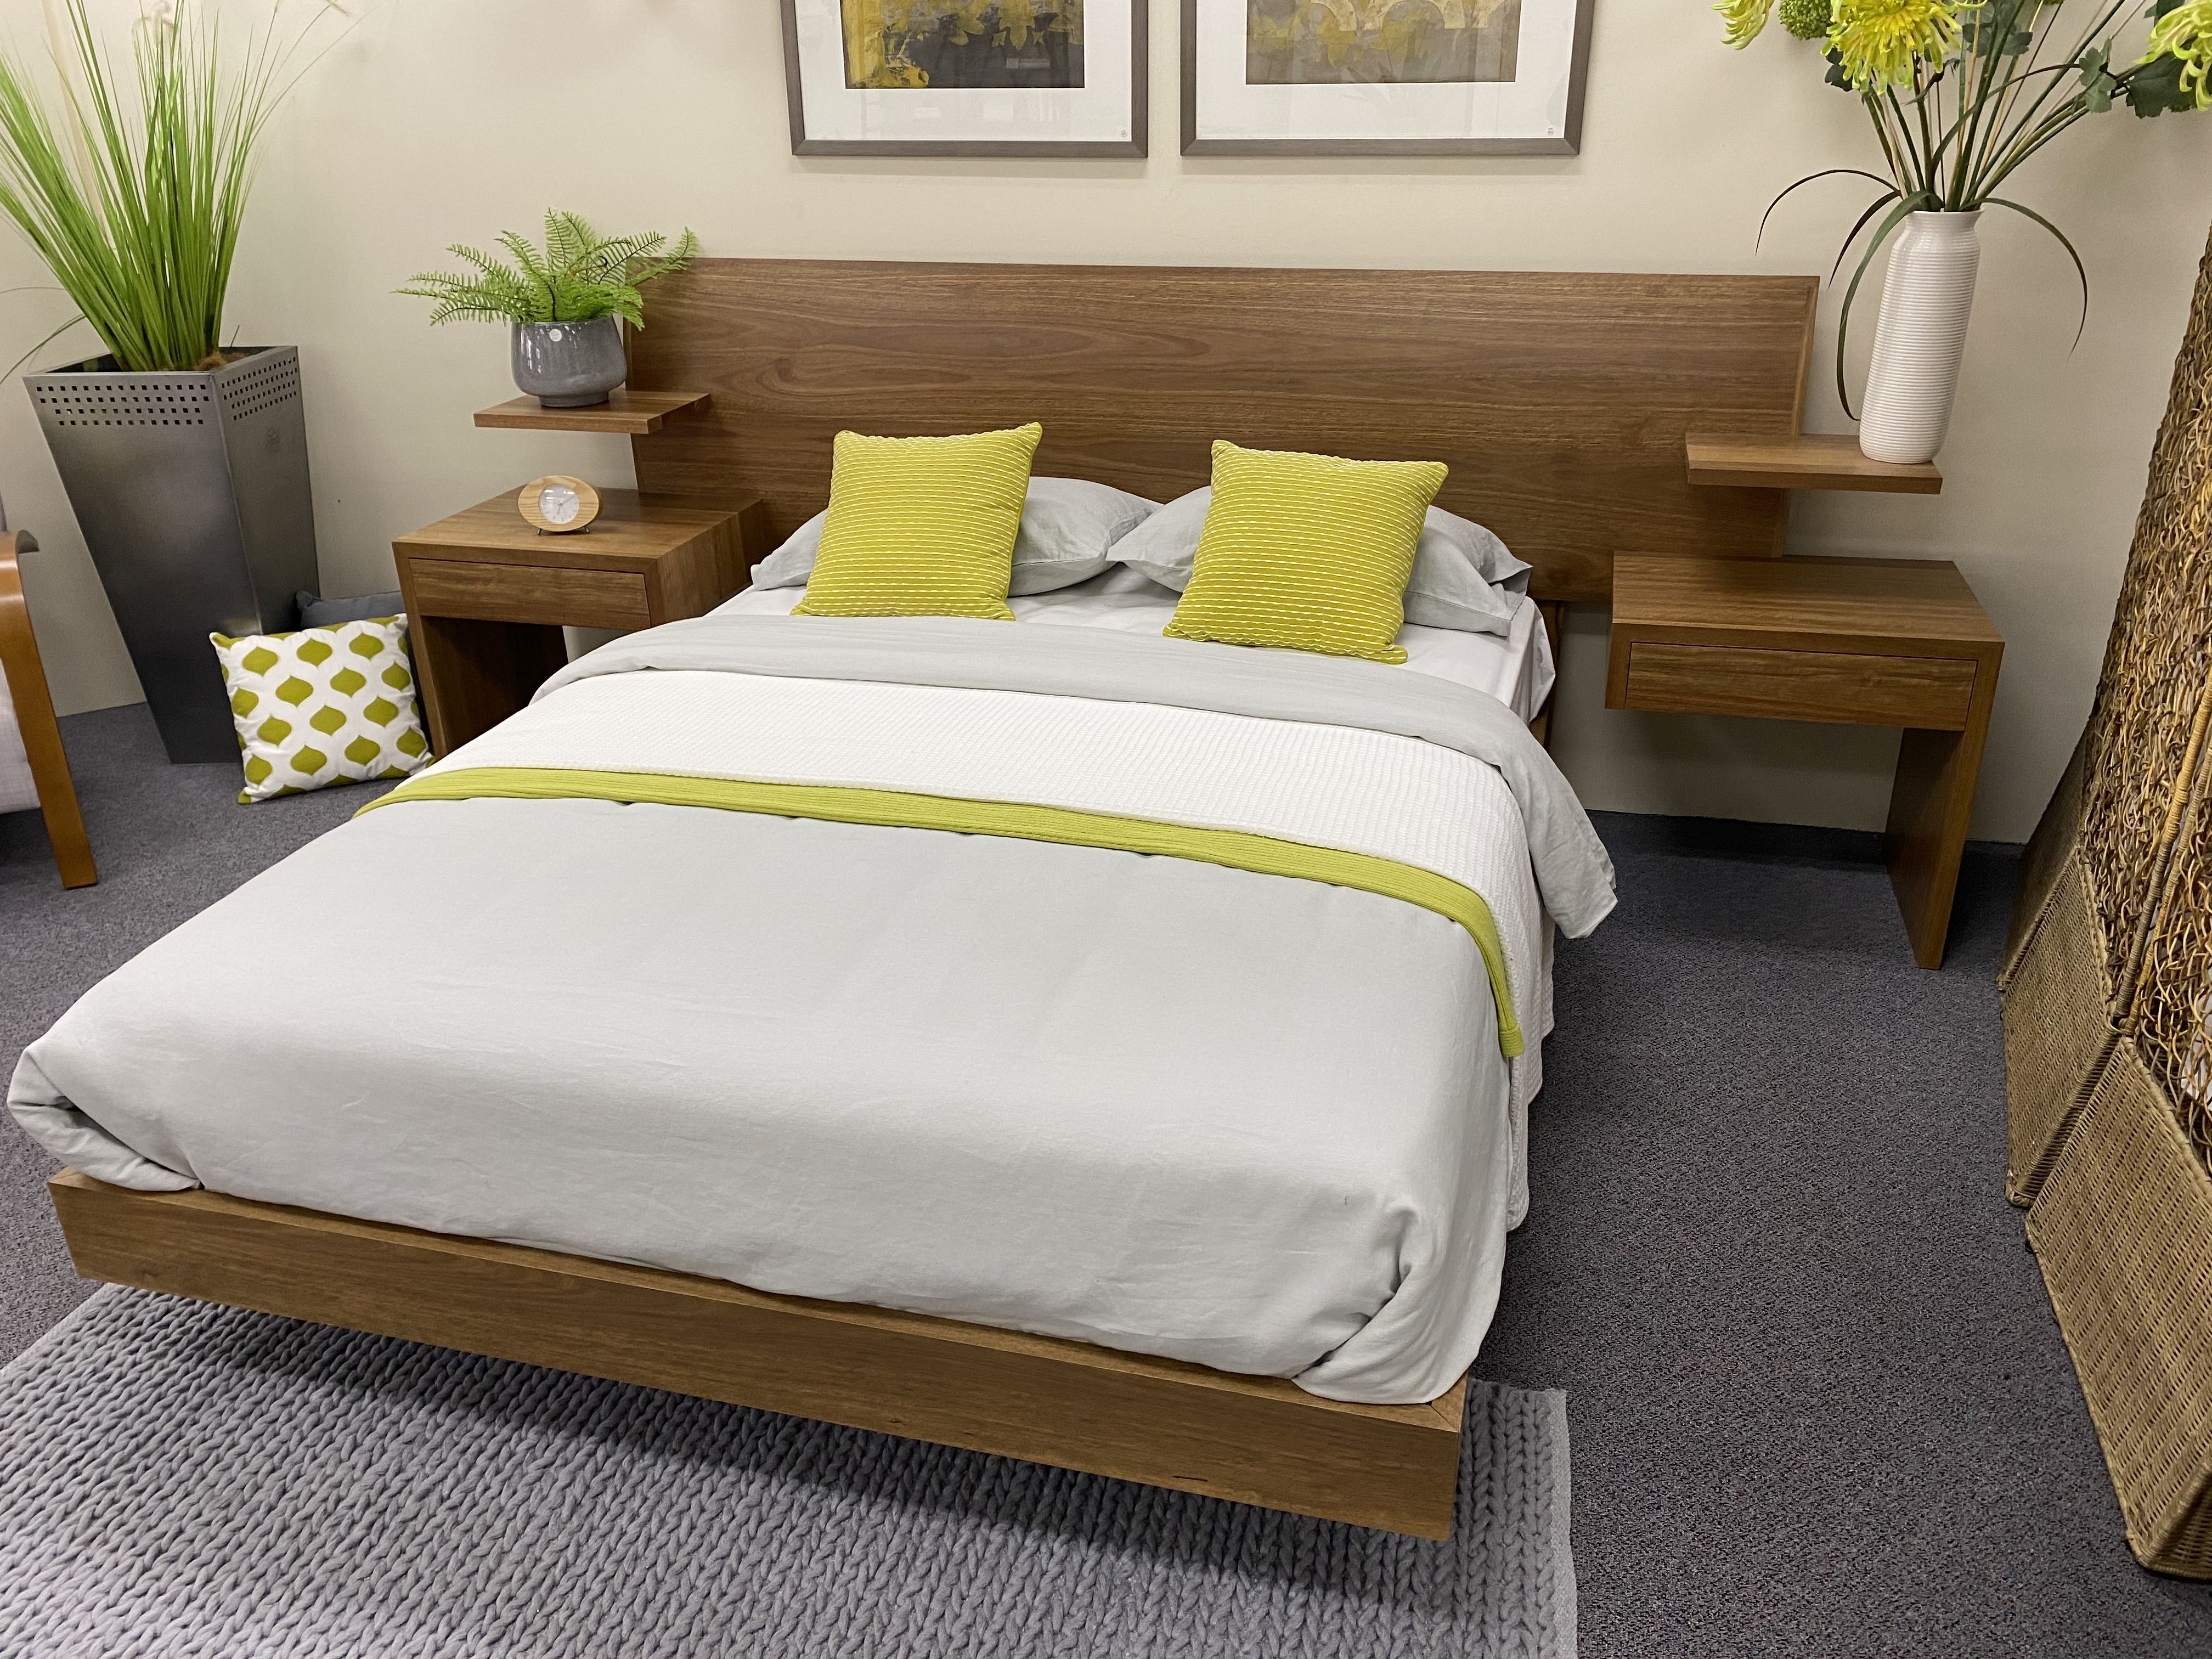 colorado bedroom furniture set row